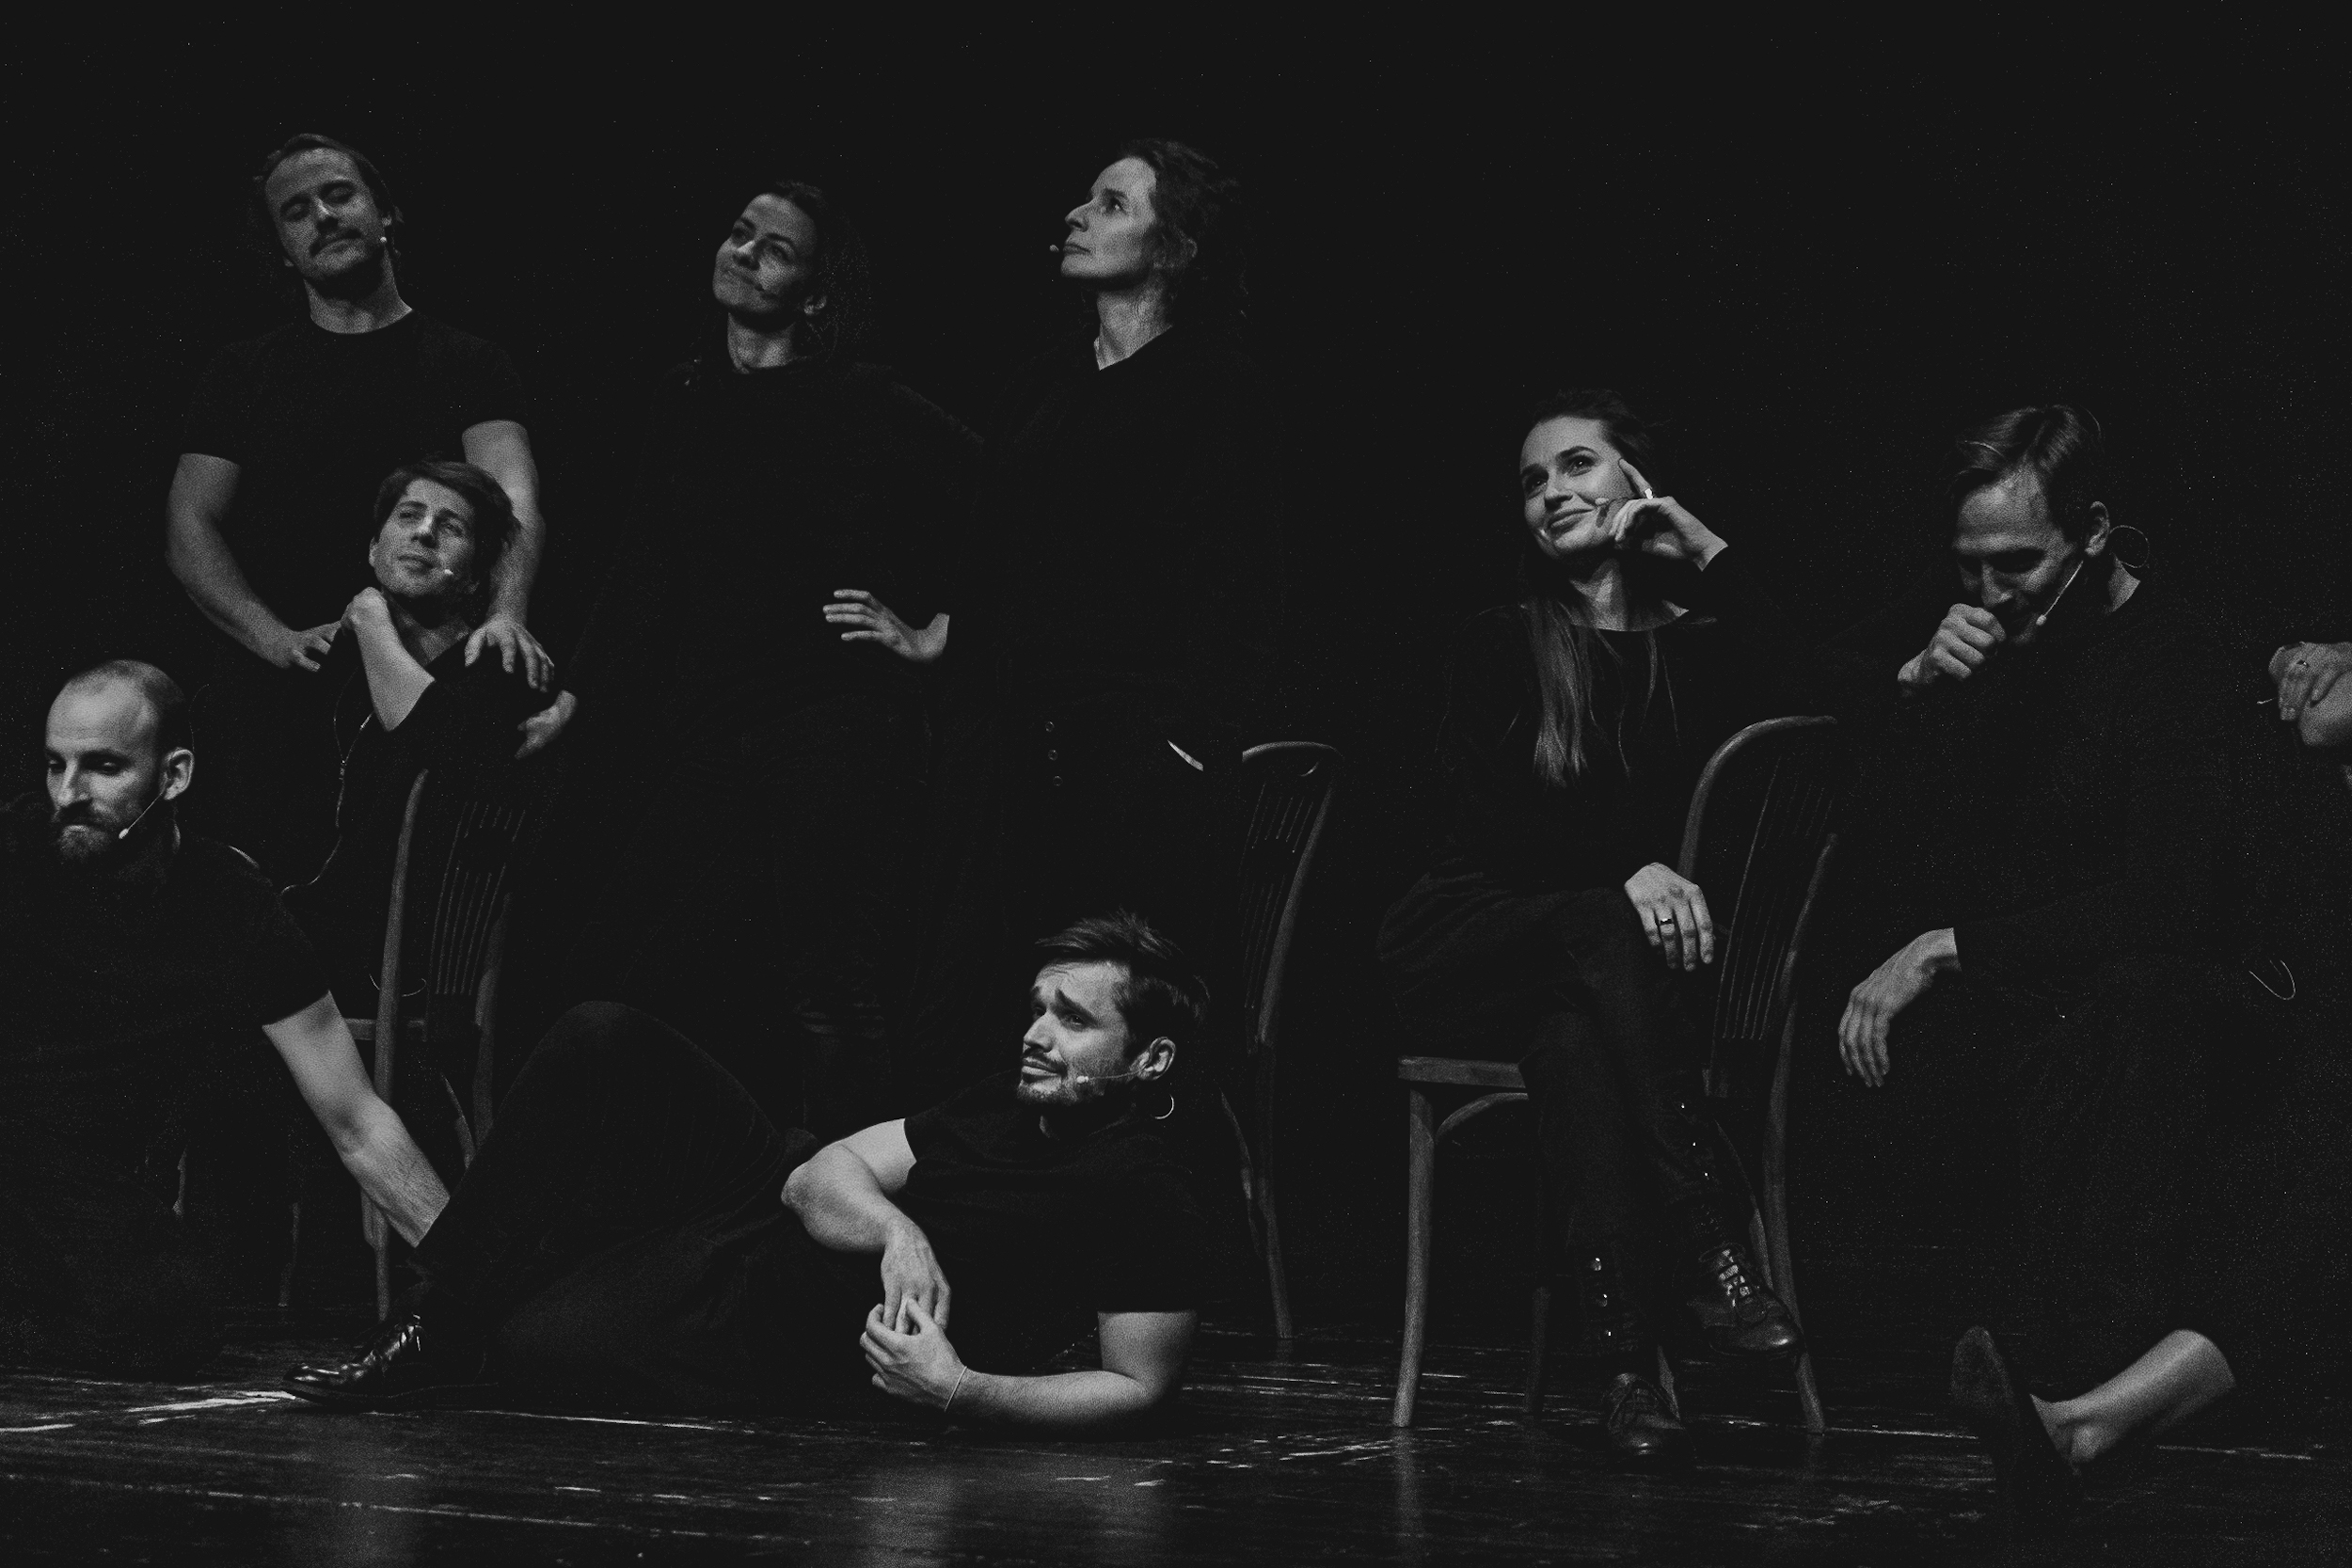 Czarno białe zdjęcie. Grupa dorosłych osób w czarnych ubraniach stoi i leży na ciemnej scenie